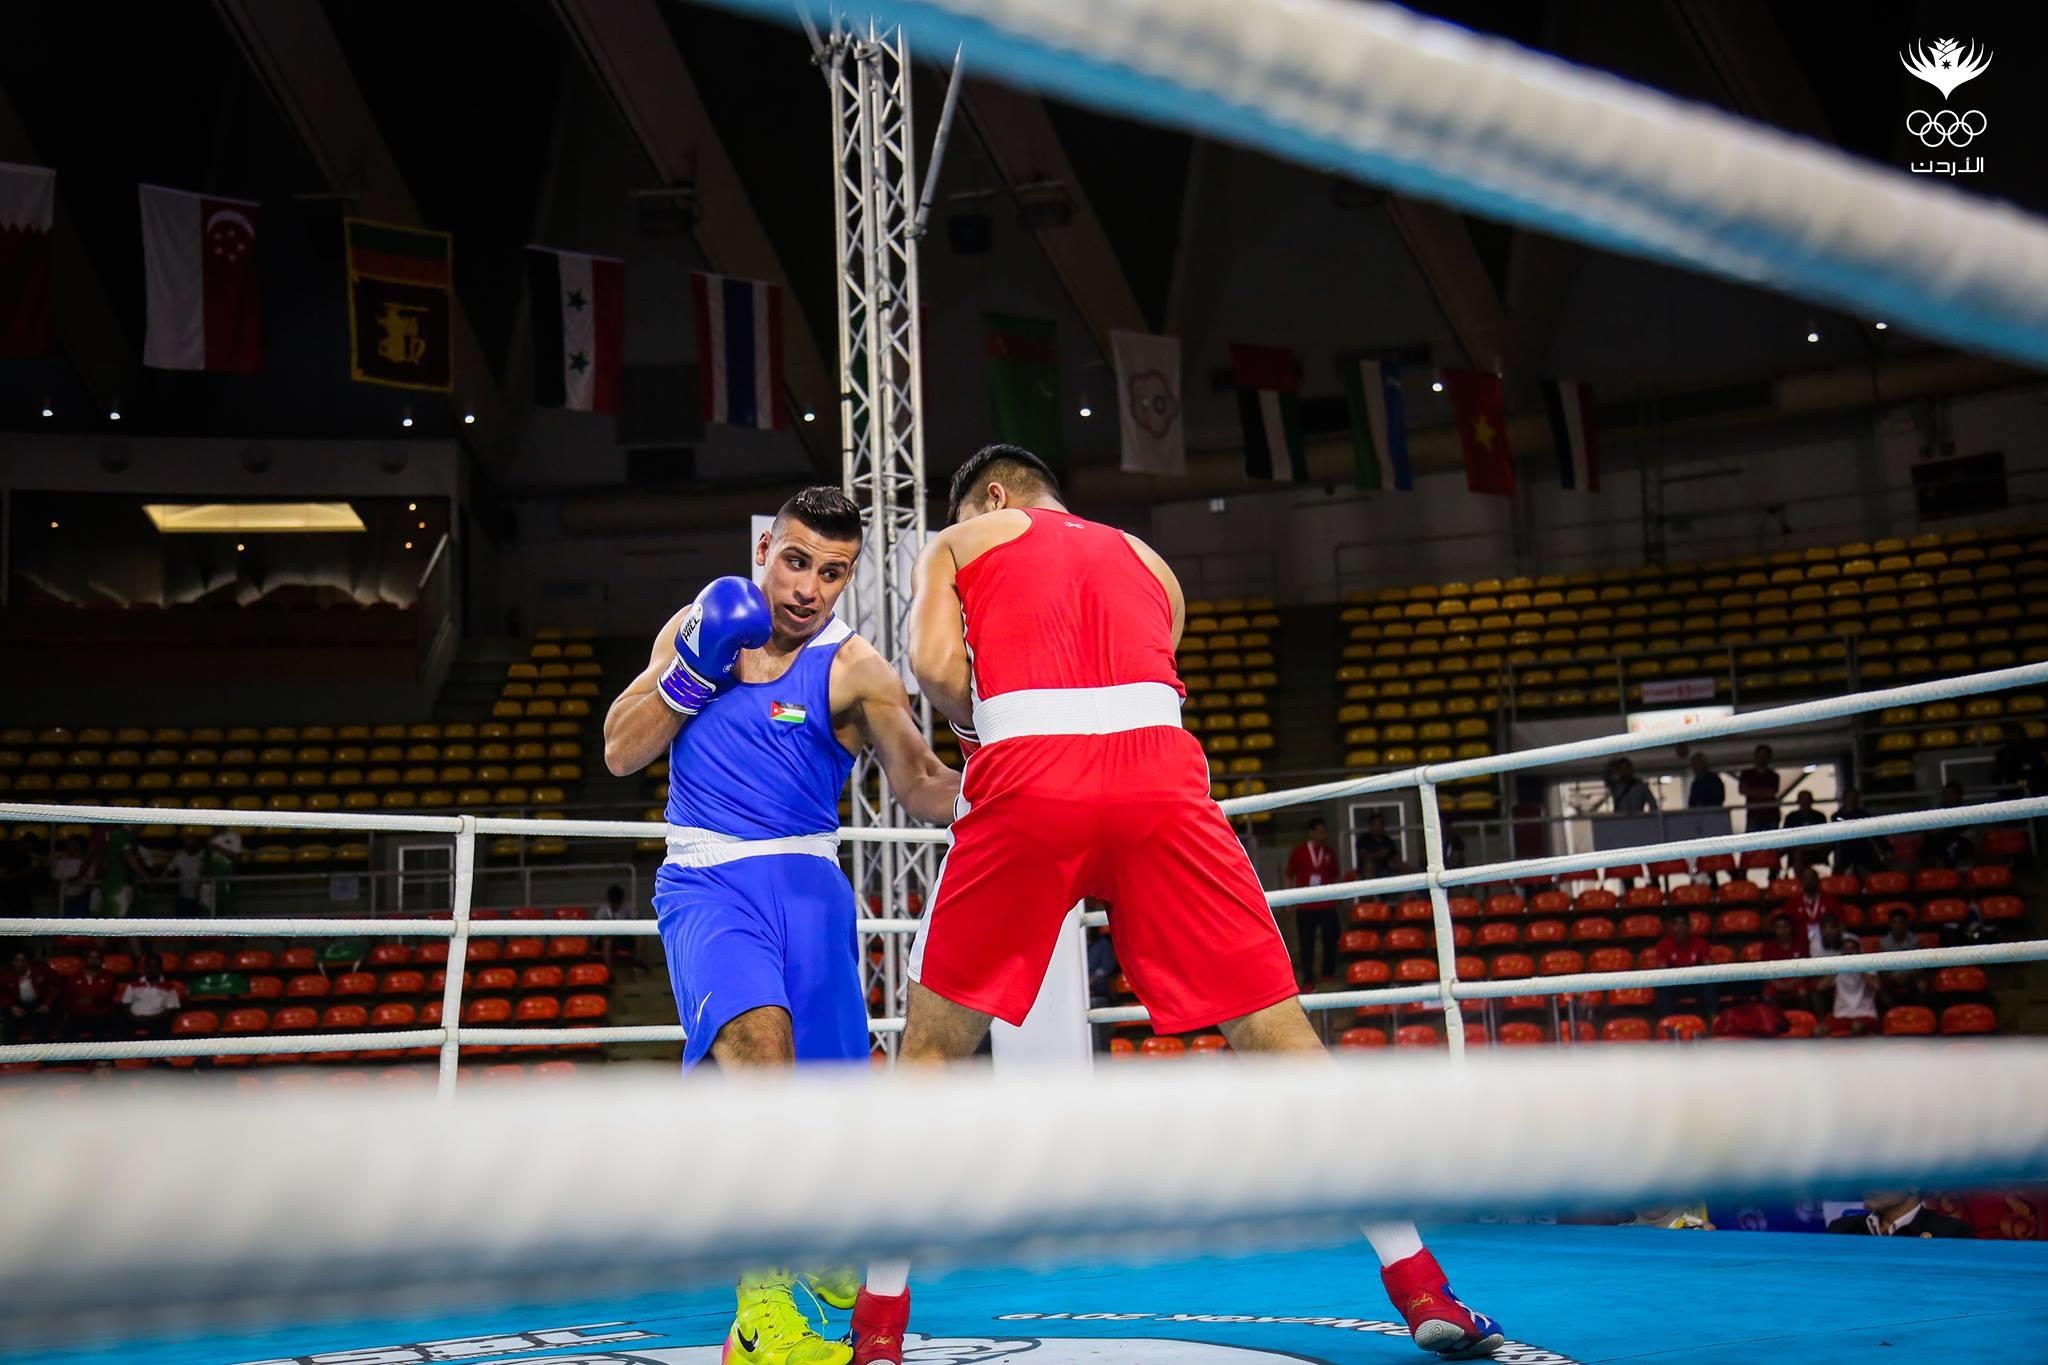 الملاكم الأولمبي حسين عشيش (بالقميص الأزرق) خلال المباراة، 23 أبريل 2019. (اللجنة الأولمبية الأردنية)